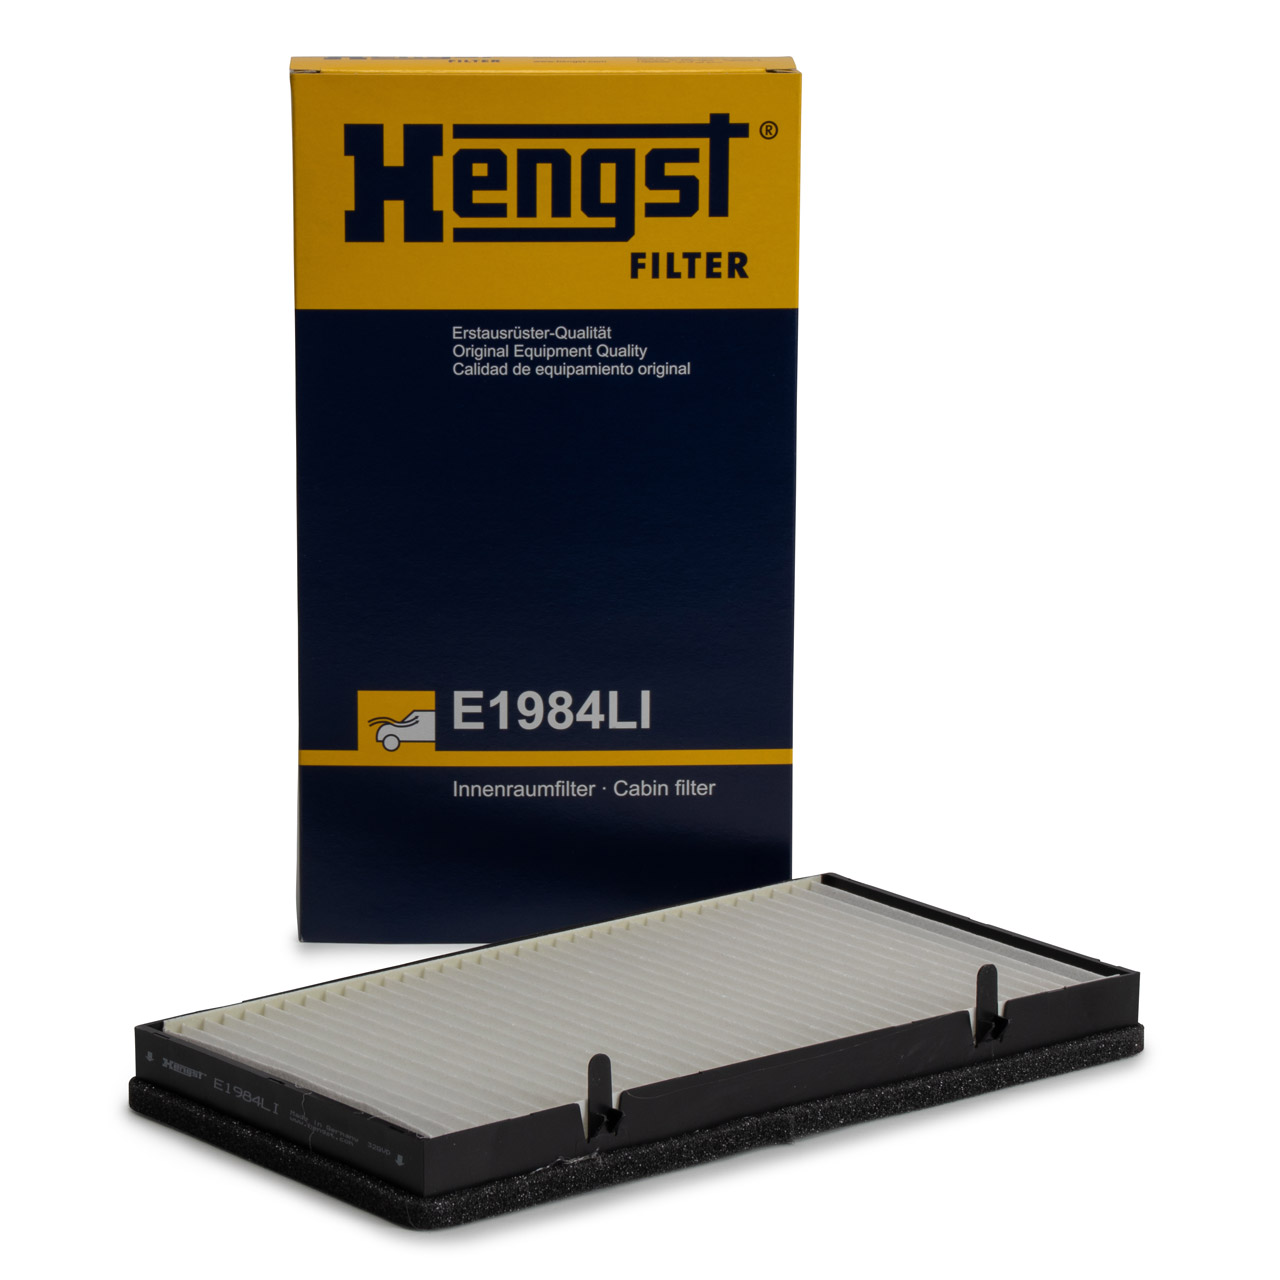 HENGST E1984LI Innenraumfilter für NISSAN PRIMASTAR OPEL VIVARO RENAULT TRAFIC 2